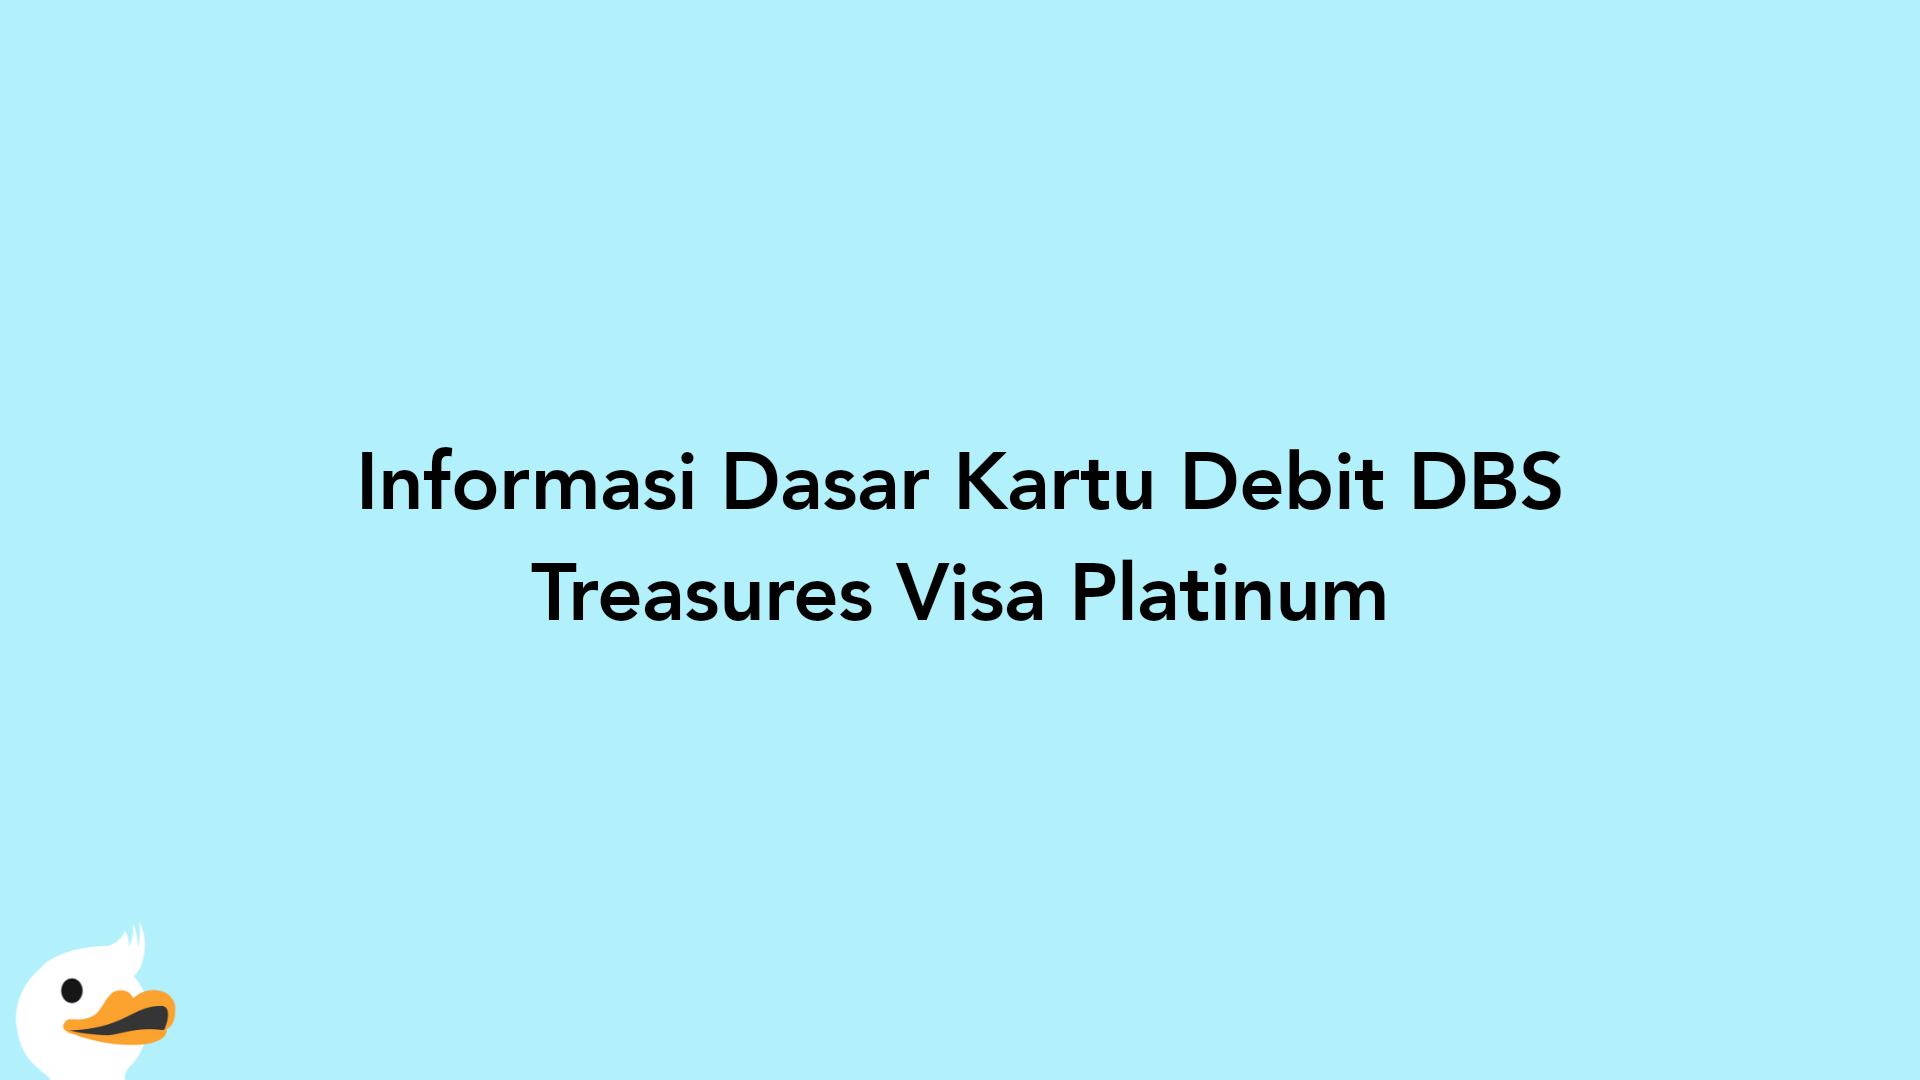 Informasi Dasar Kartu Debit DBS Treasures Visa Platinum